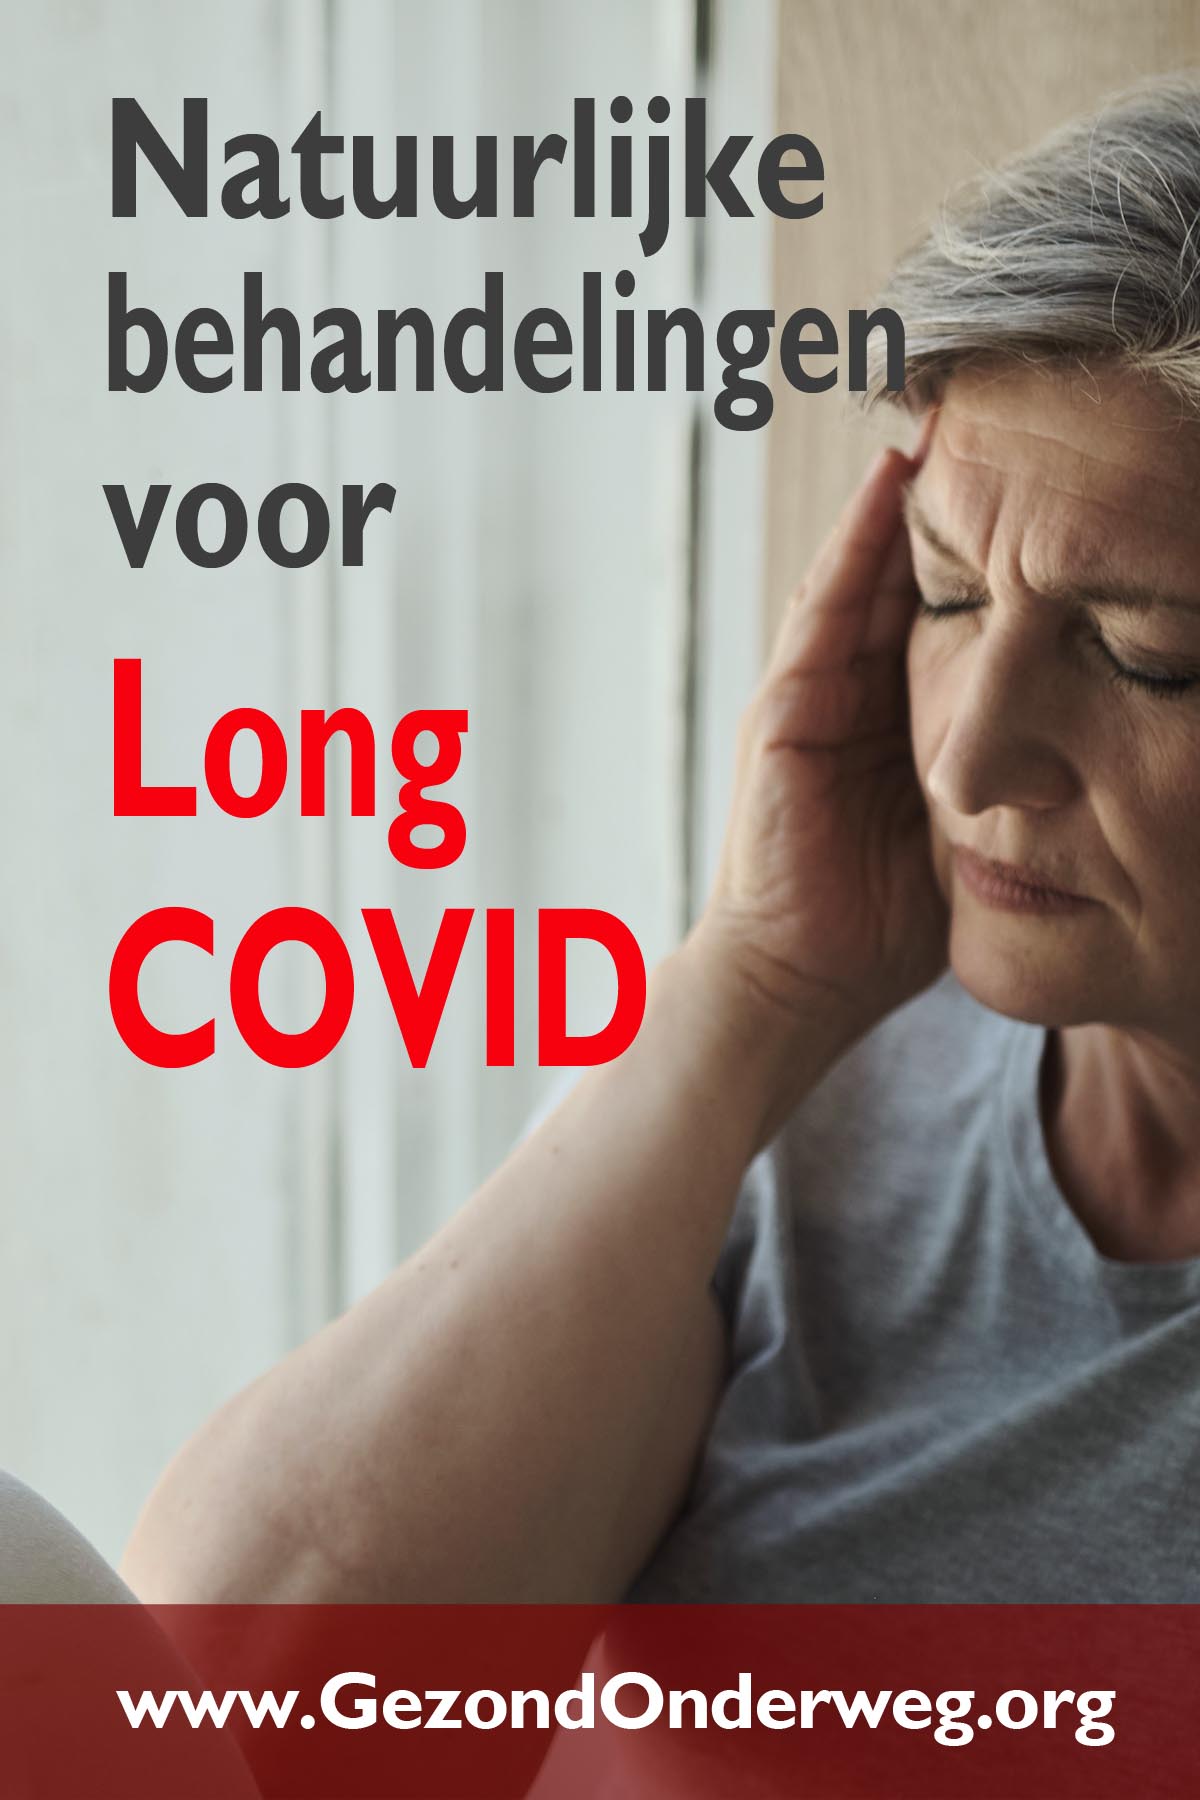 Natuurlijke behandelingen voor Long COVID